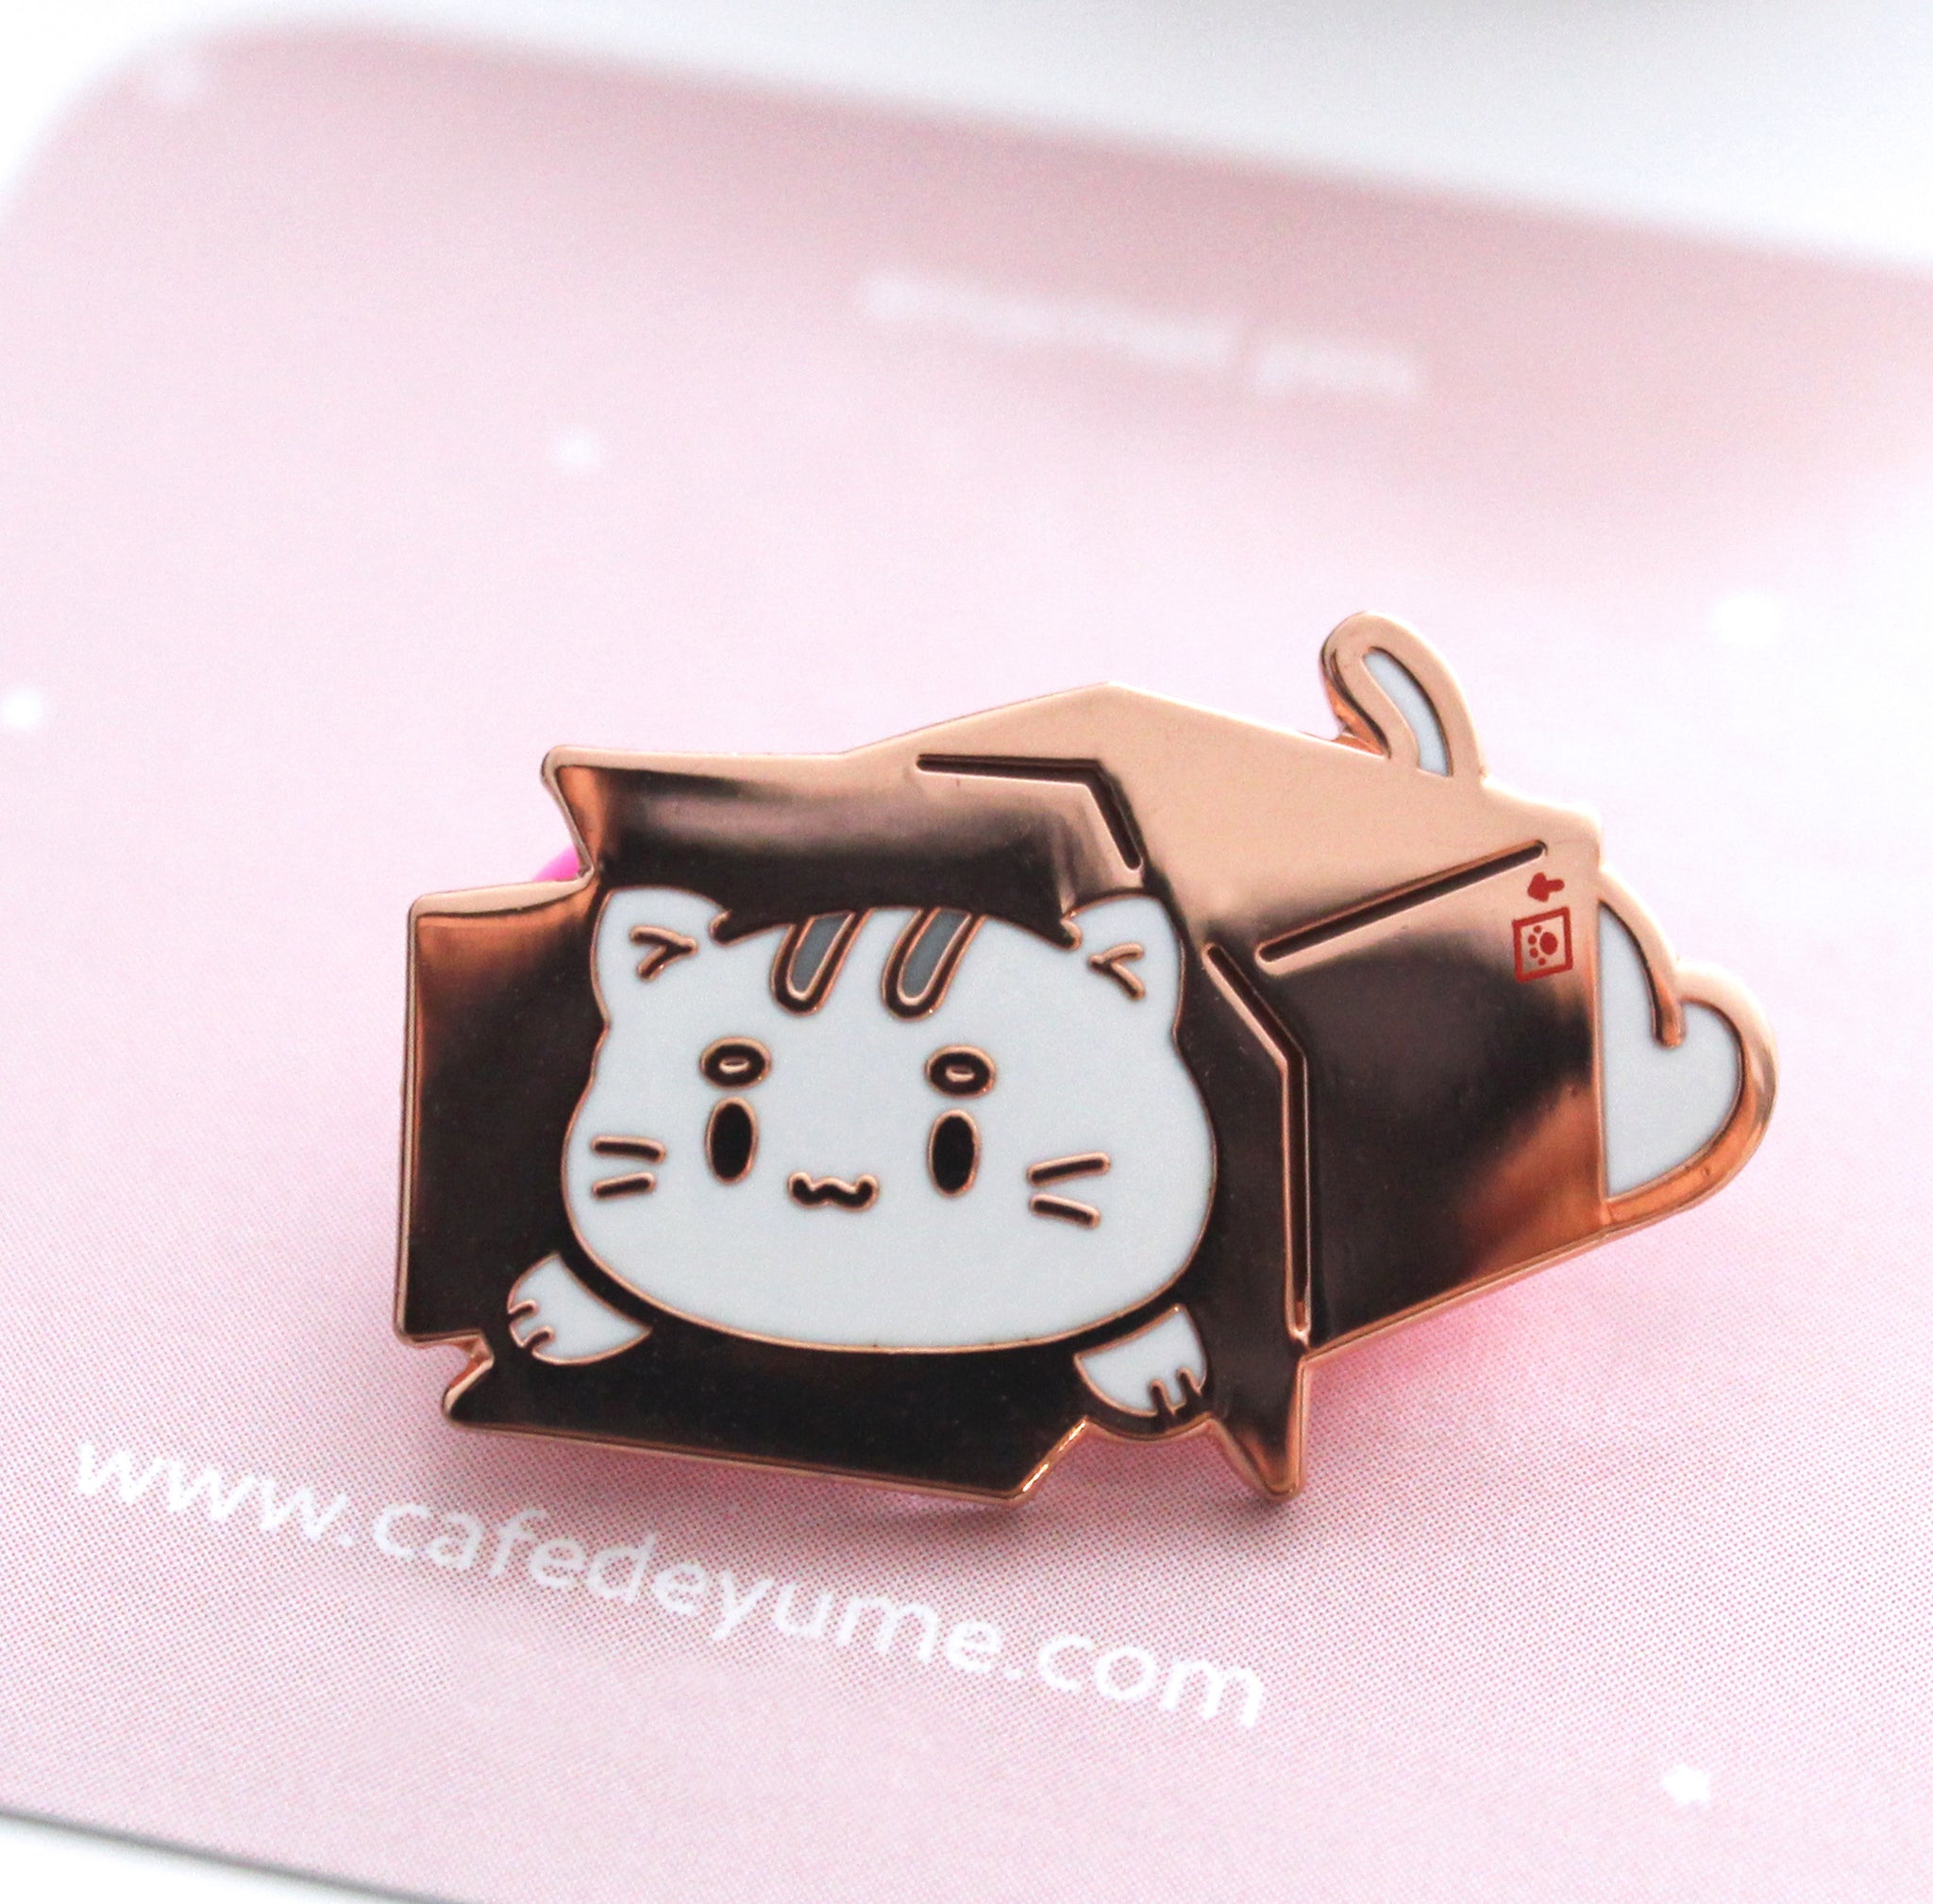 kitty in a box enamel pin